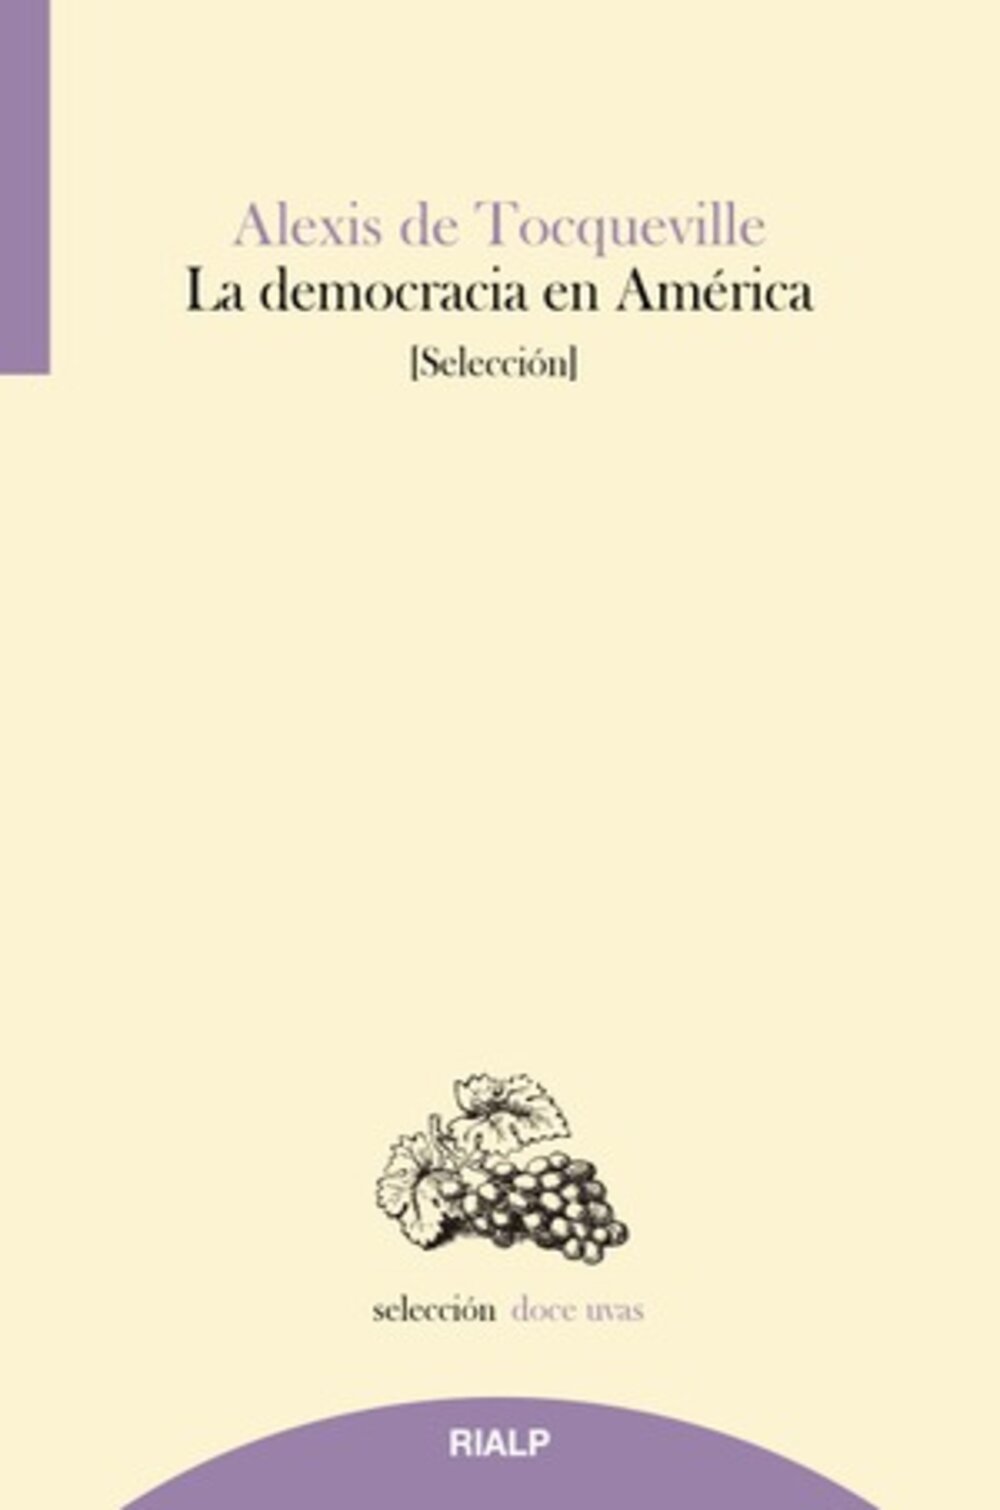 Alexis de Tocqueville, La democracia en AméricaDe Tocqueville, Alexis y Cerdá, David